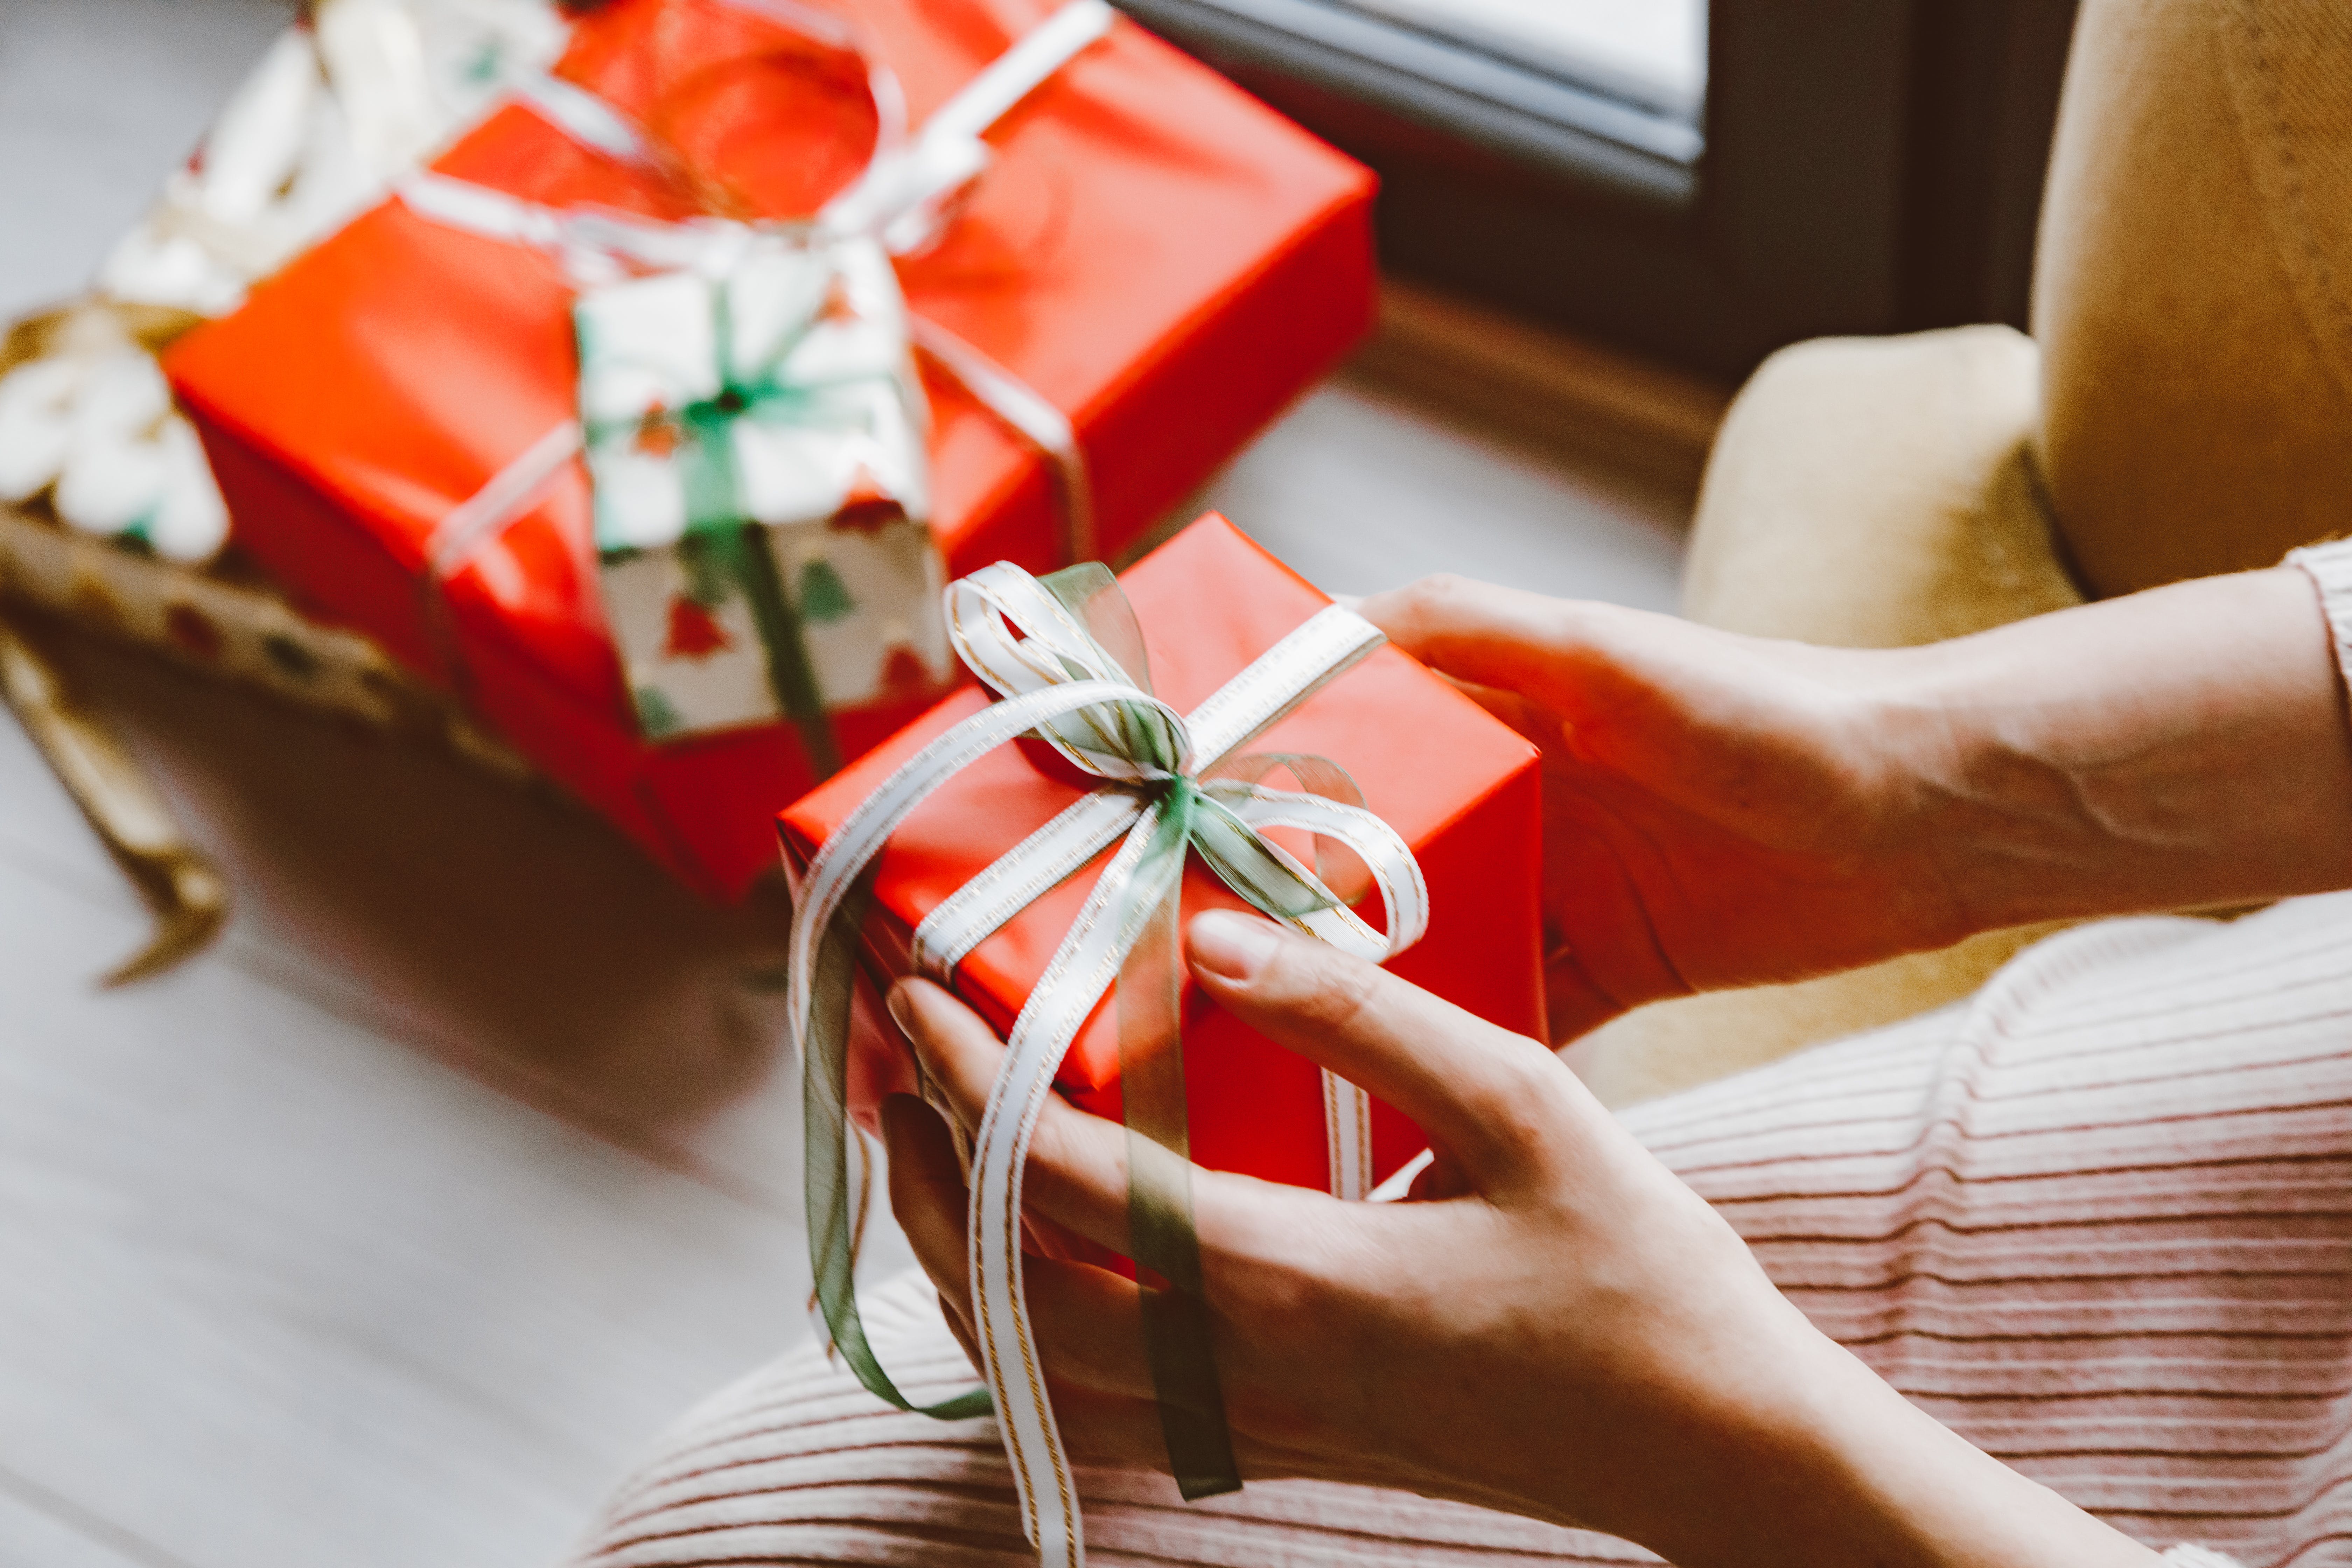 Una persona sosteniendo regalos de Navidad. | Fuente: Pexels